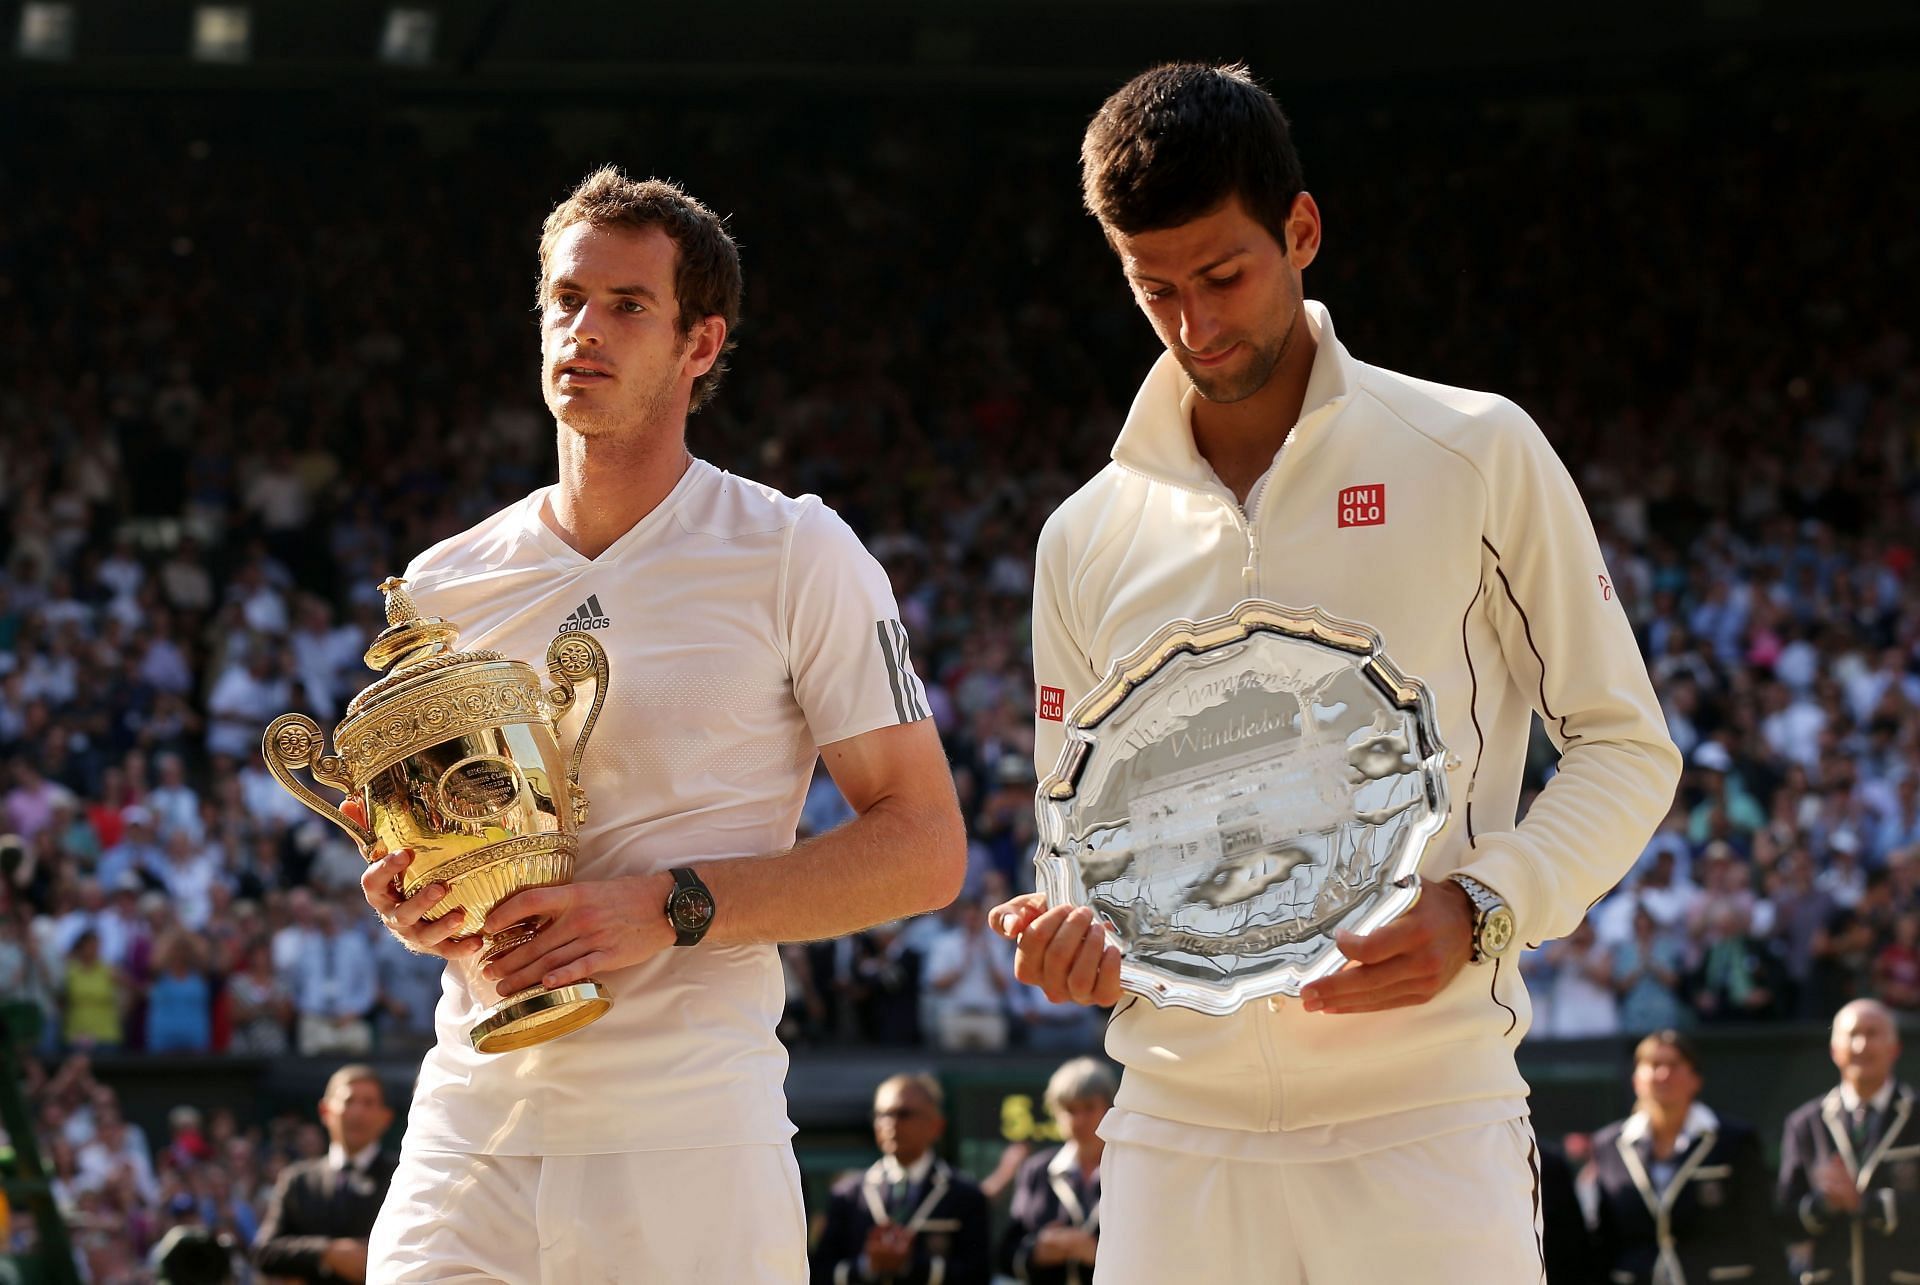 Andy Murray and Novak Djokovic at Wimbledon 2013